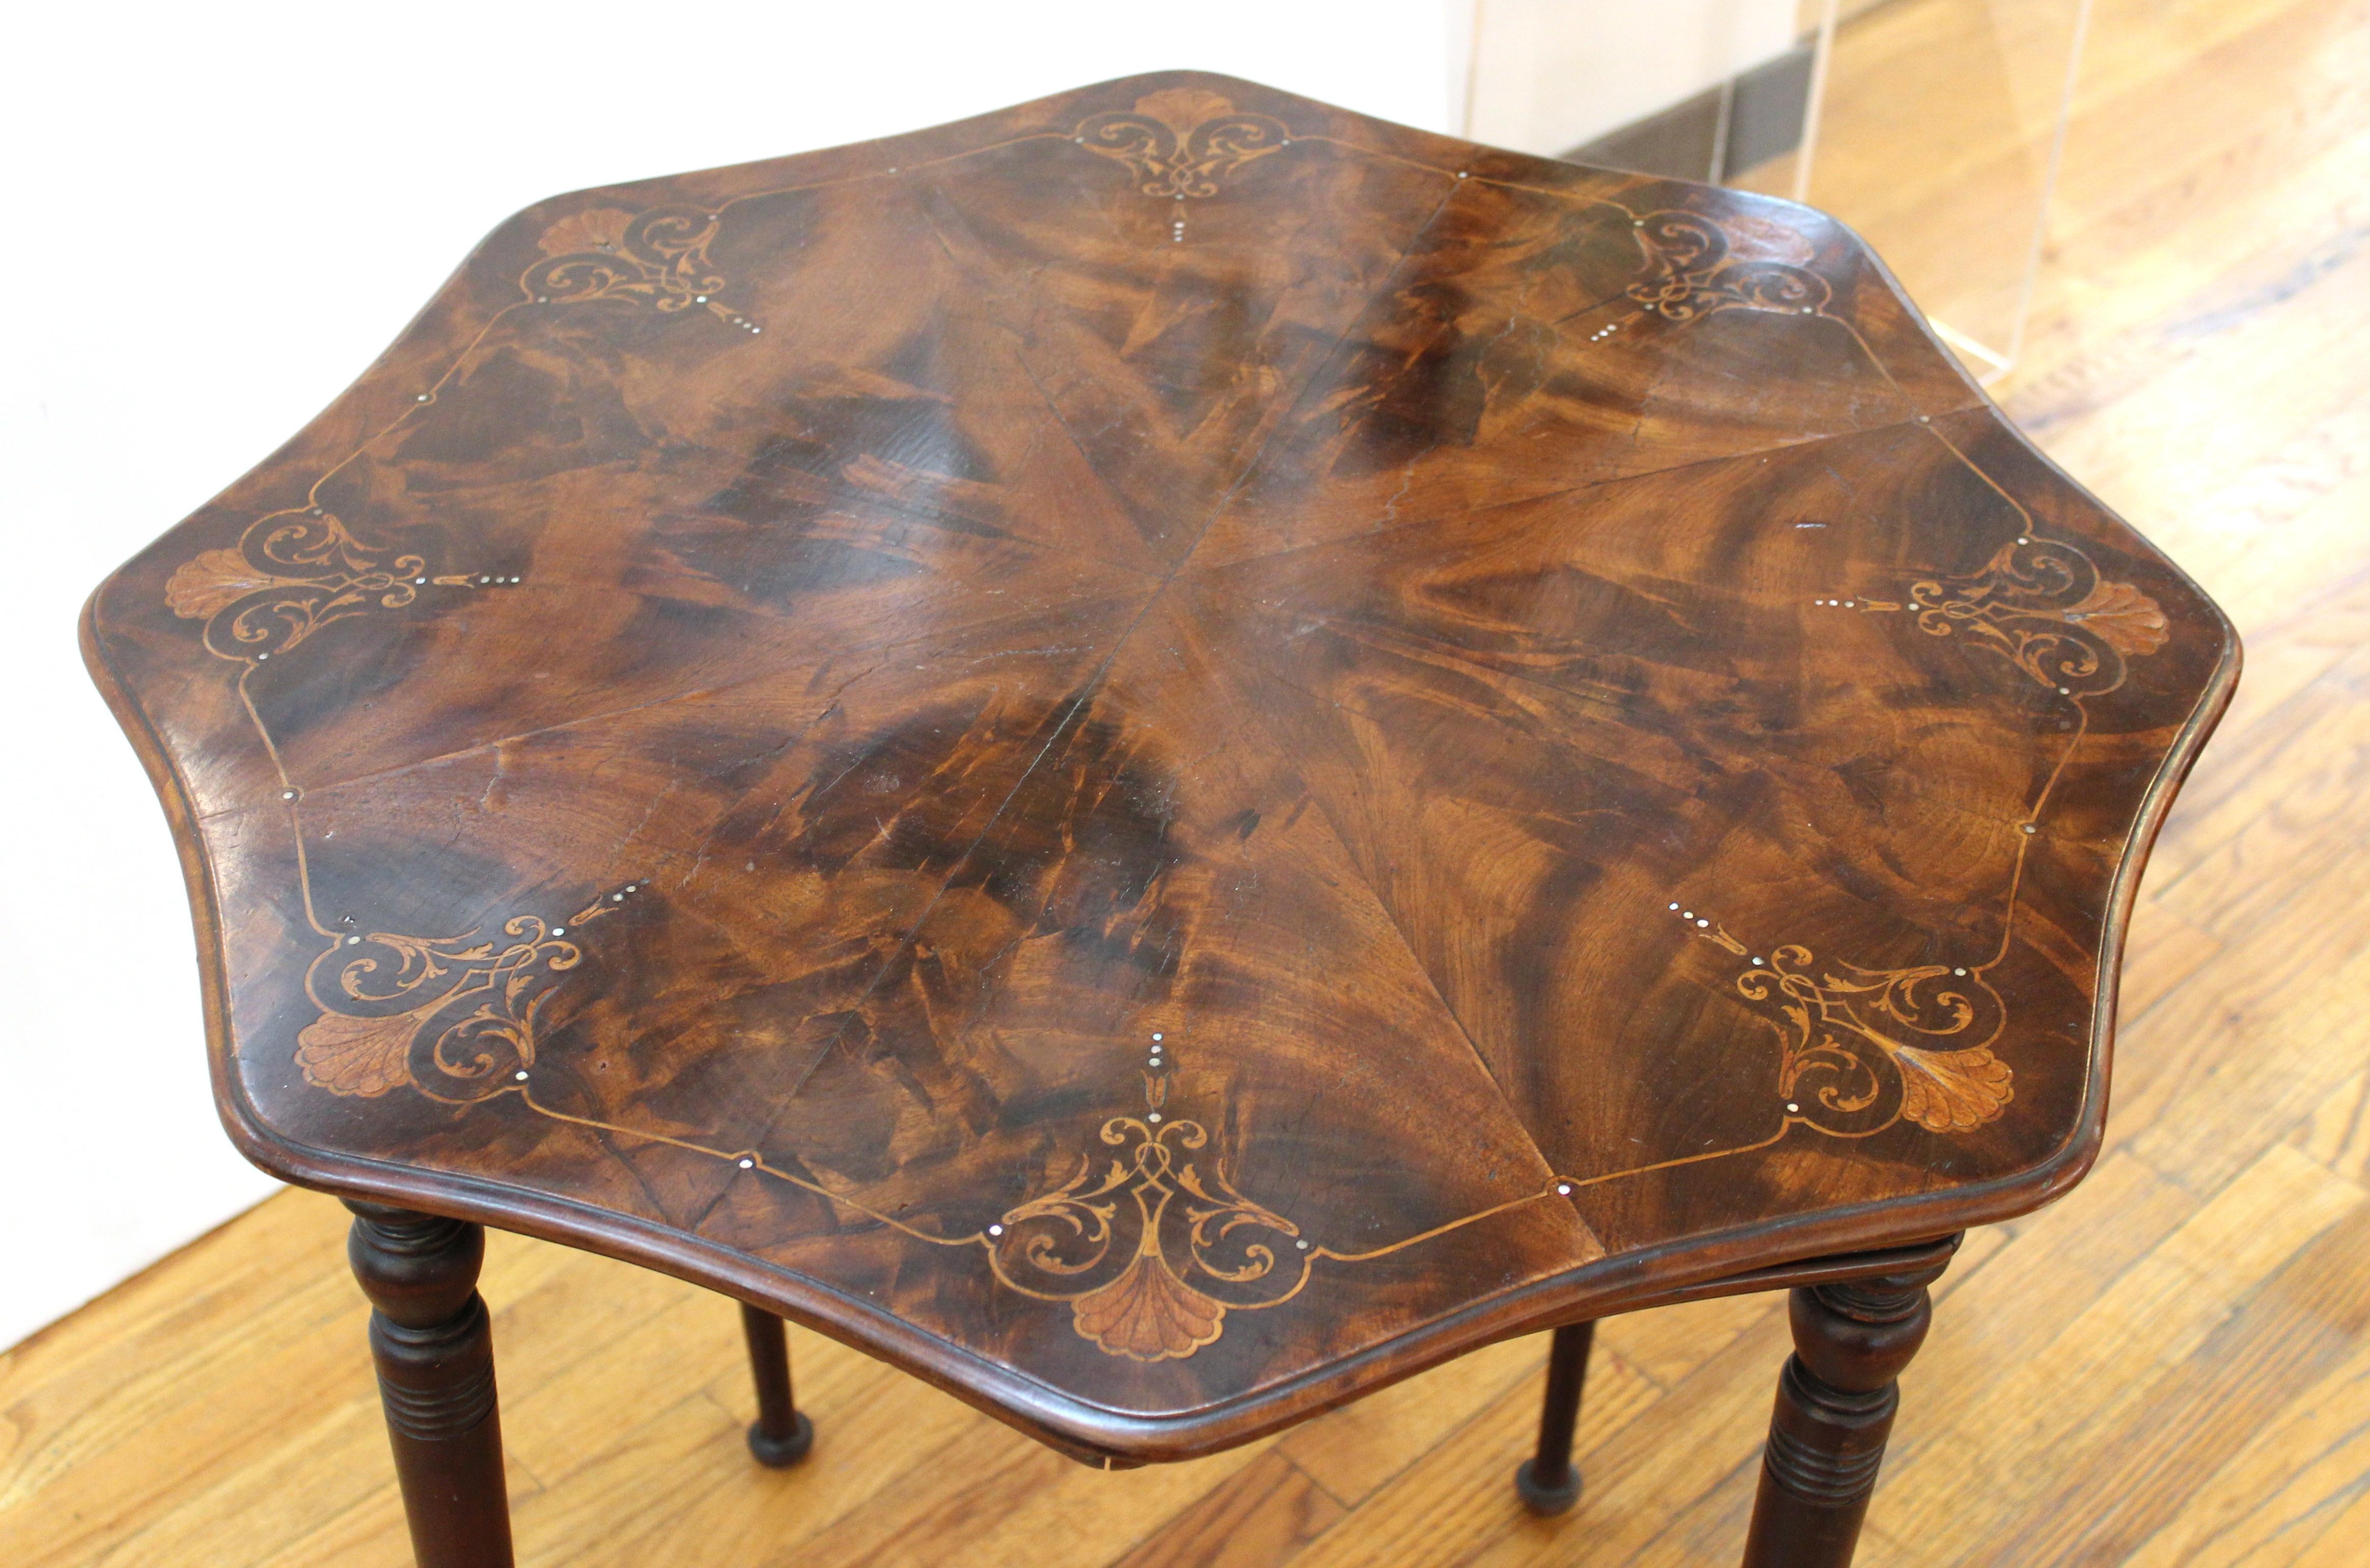 Table centrale ou d'appoint de style édouardien anglais en parquet avec incrustation de nacre.